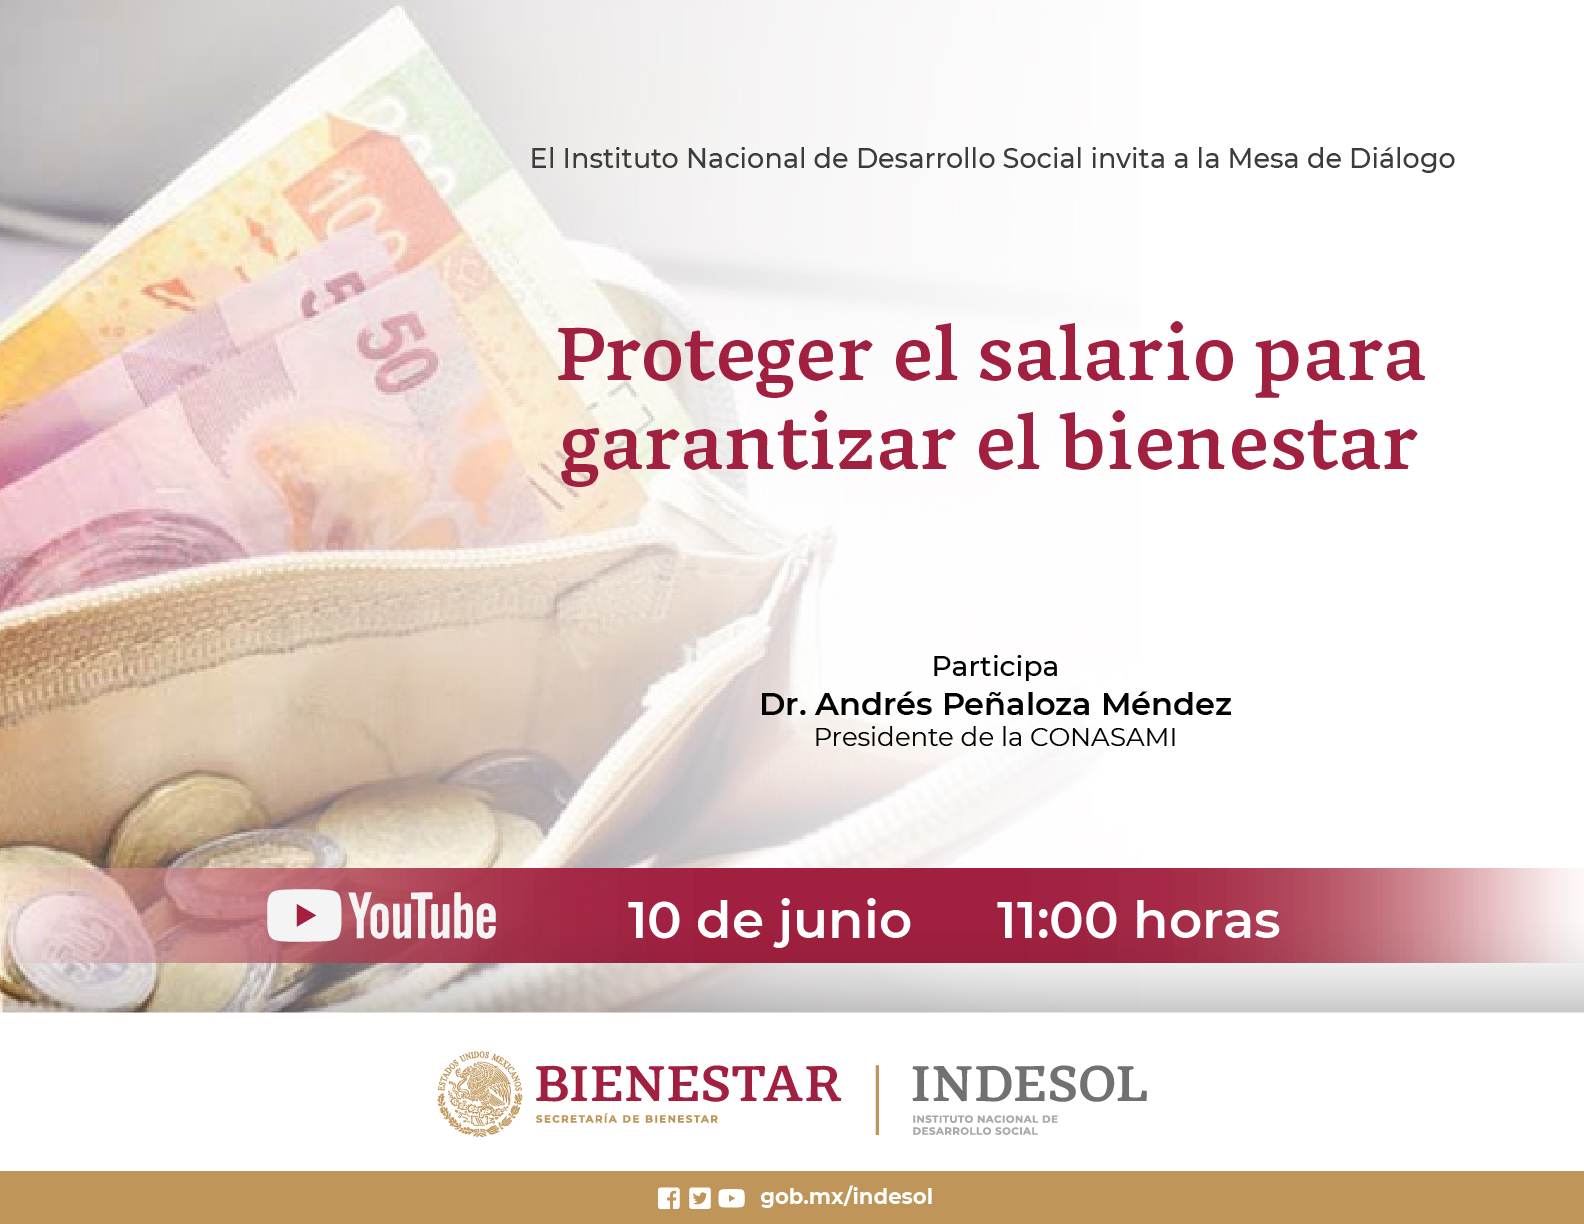 Mesa de Diálogo Indesol "Proteger el salario para garantizar el bienestar" 10 de junio 11hrs.